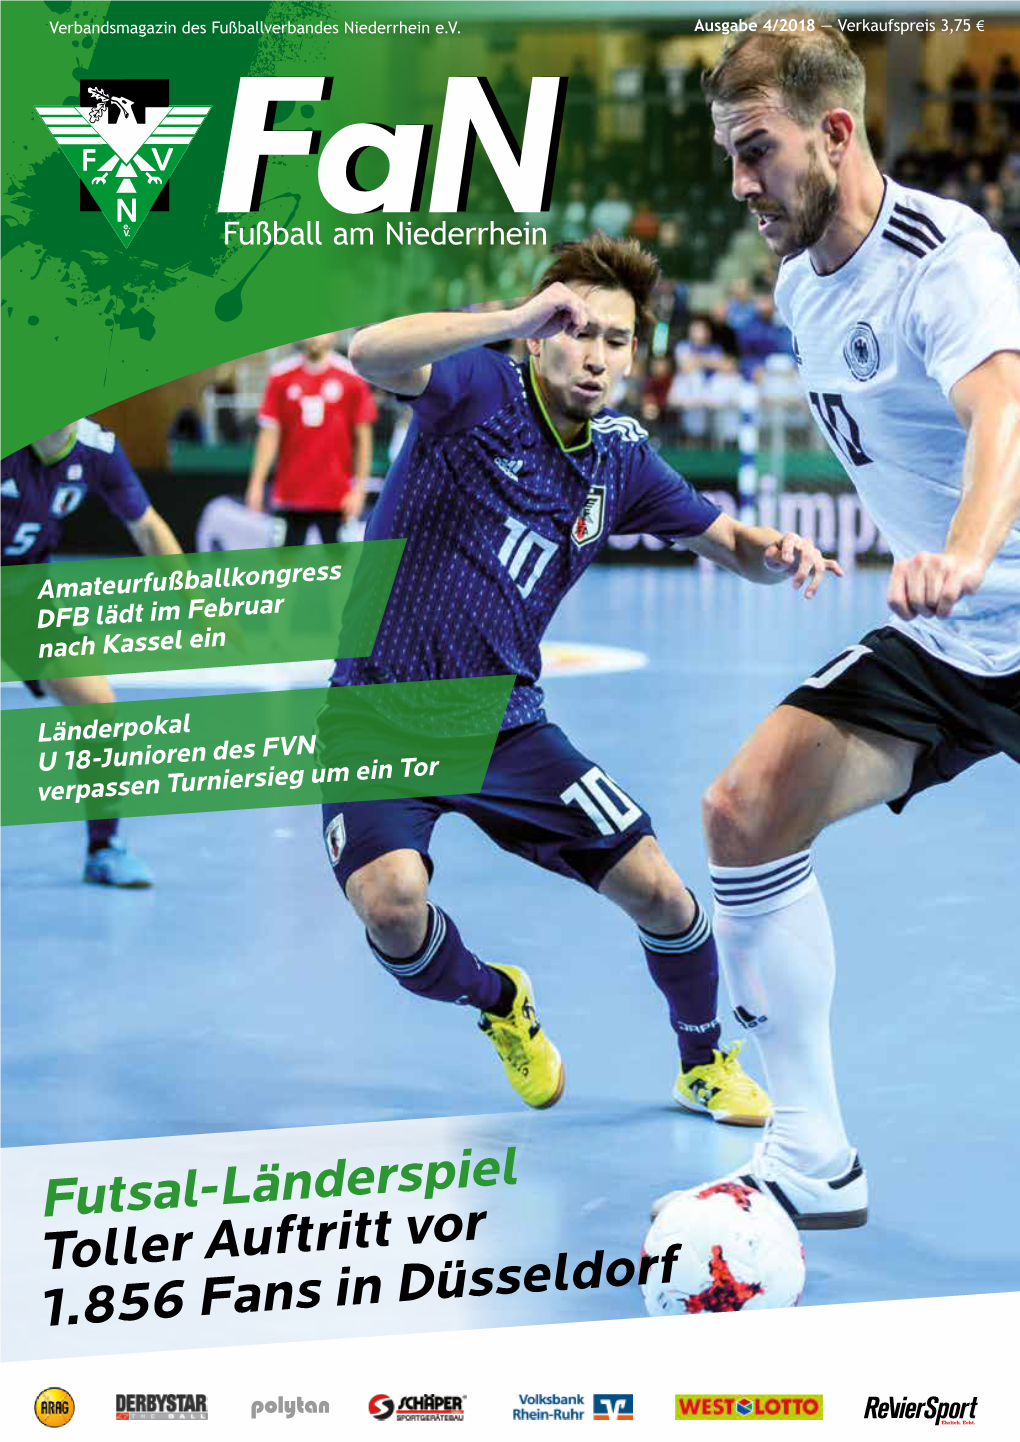 Futsal-Länderspiel Toller Auftritt Vor 1.856 Fans in Düsseldorf Inhalt